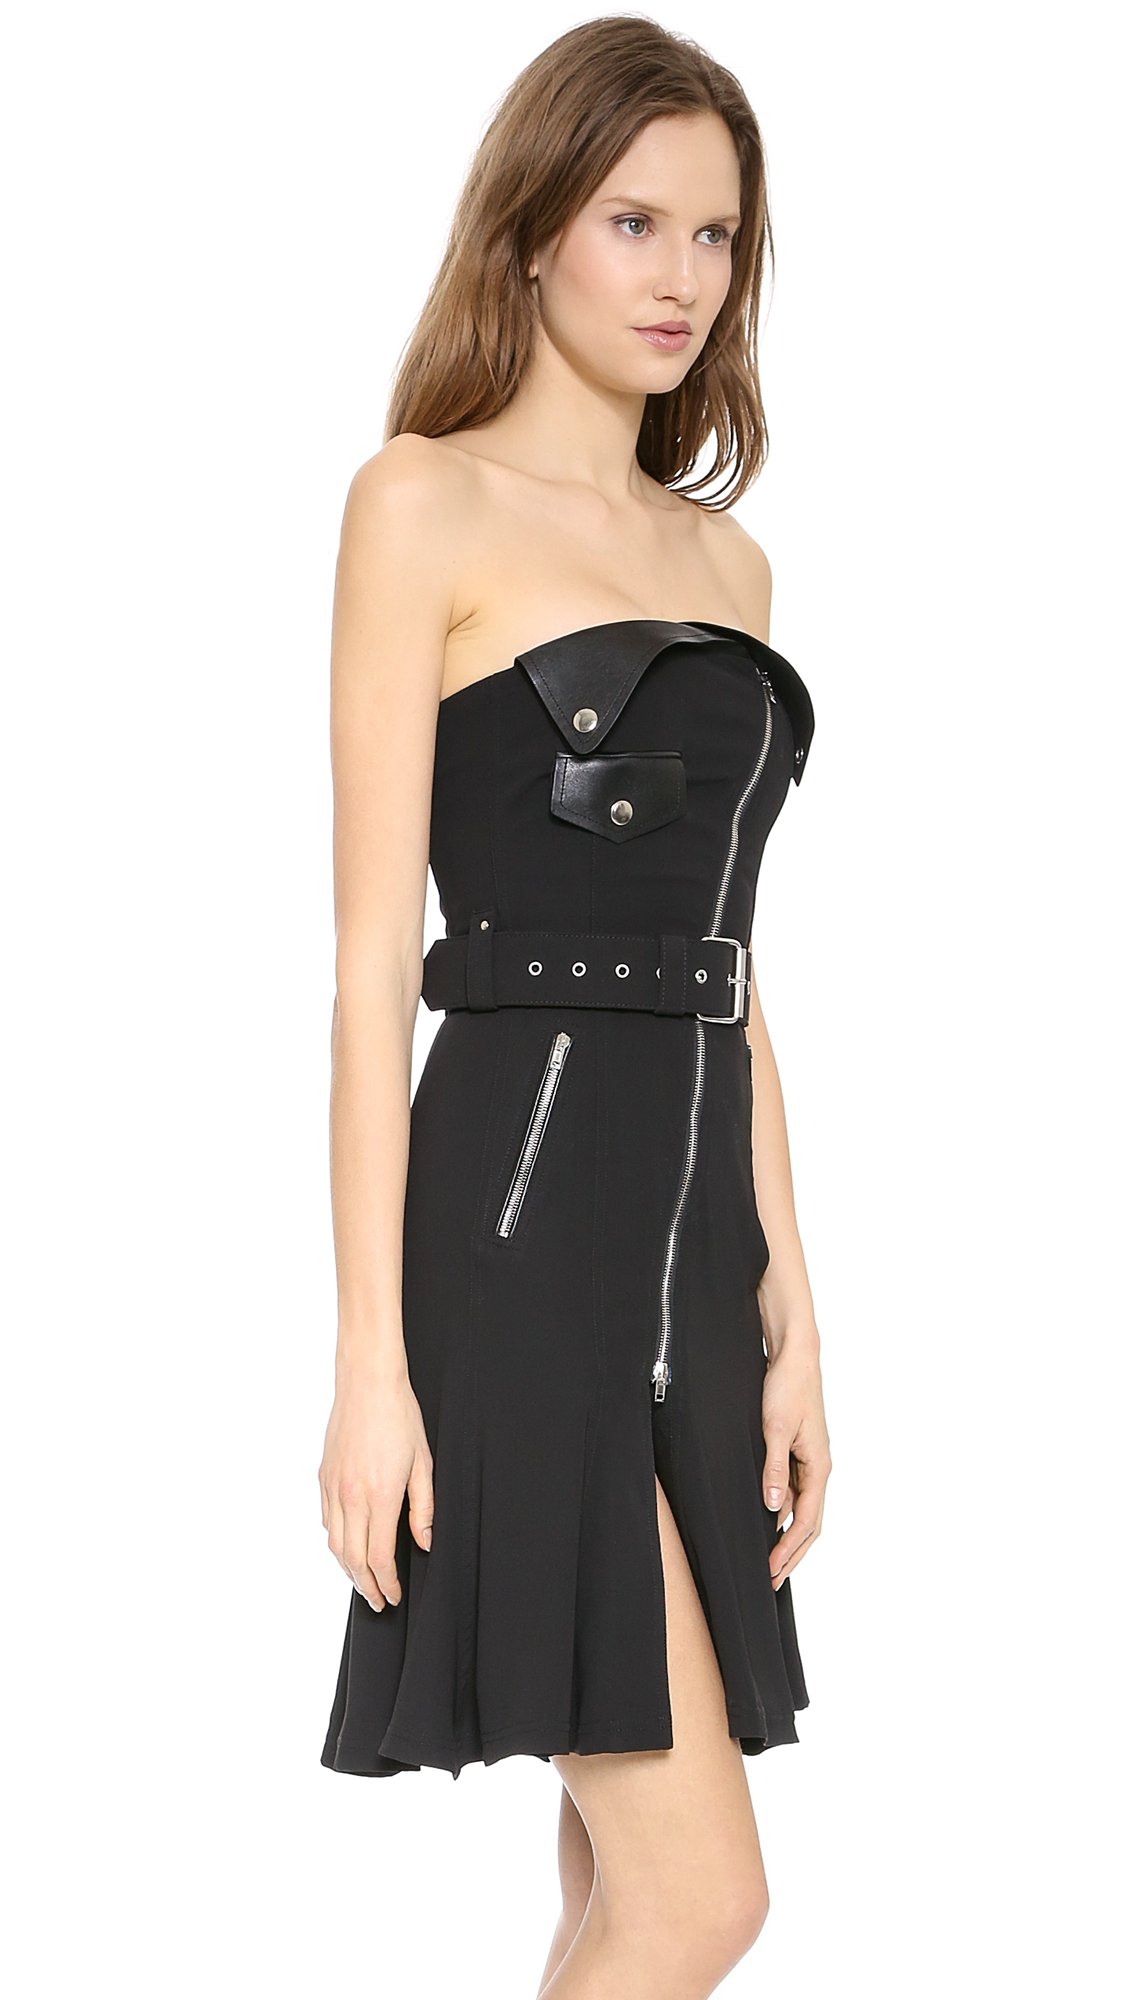 Jean paul gaultier Strapless Bustier Dress - Black in Black | Lyst